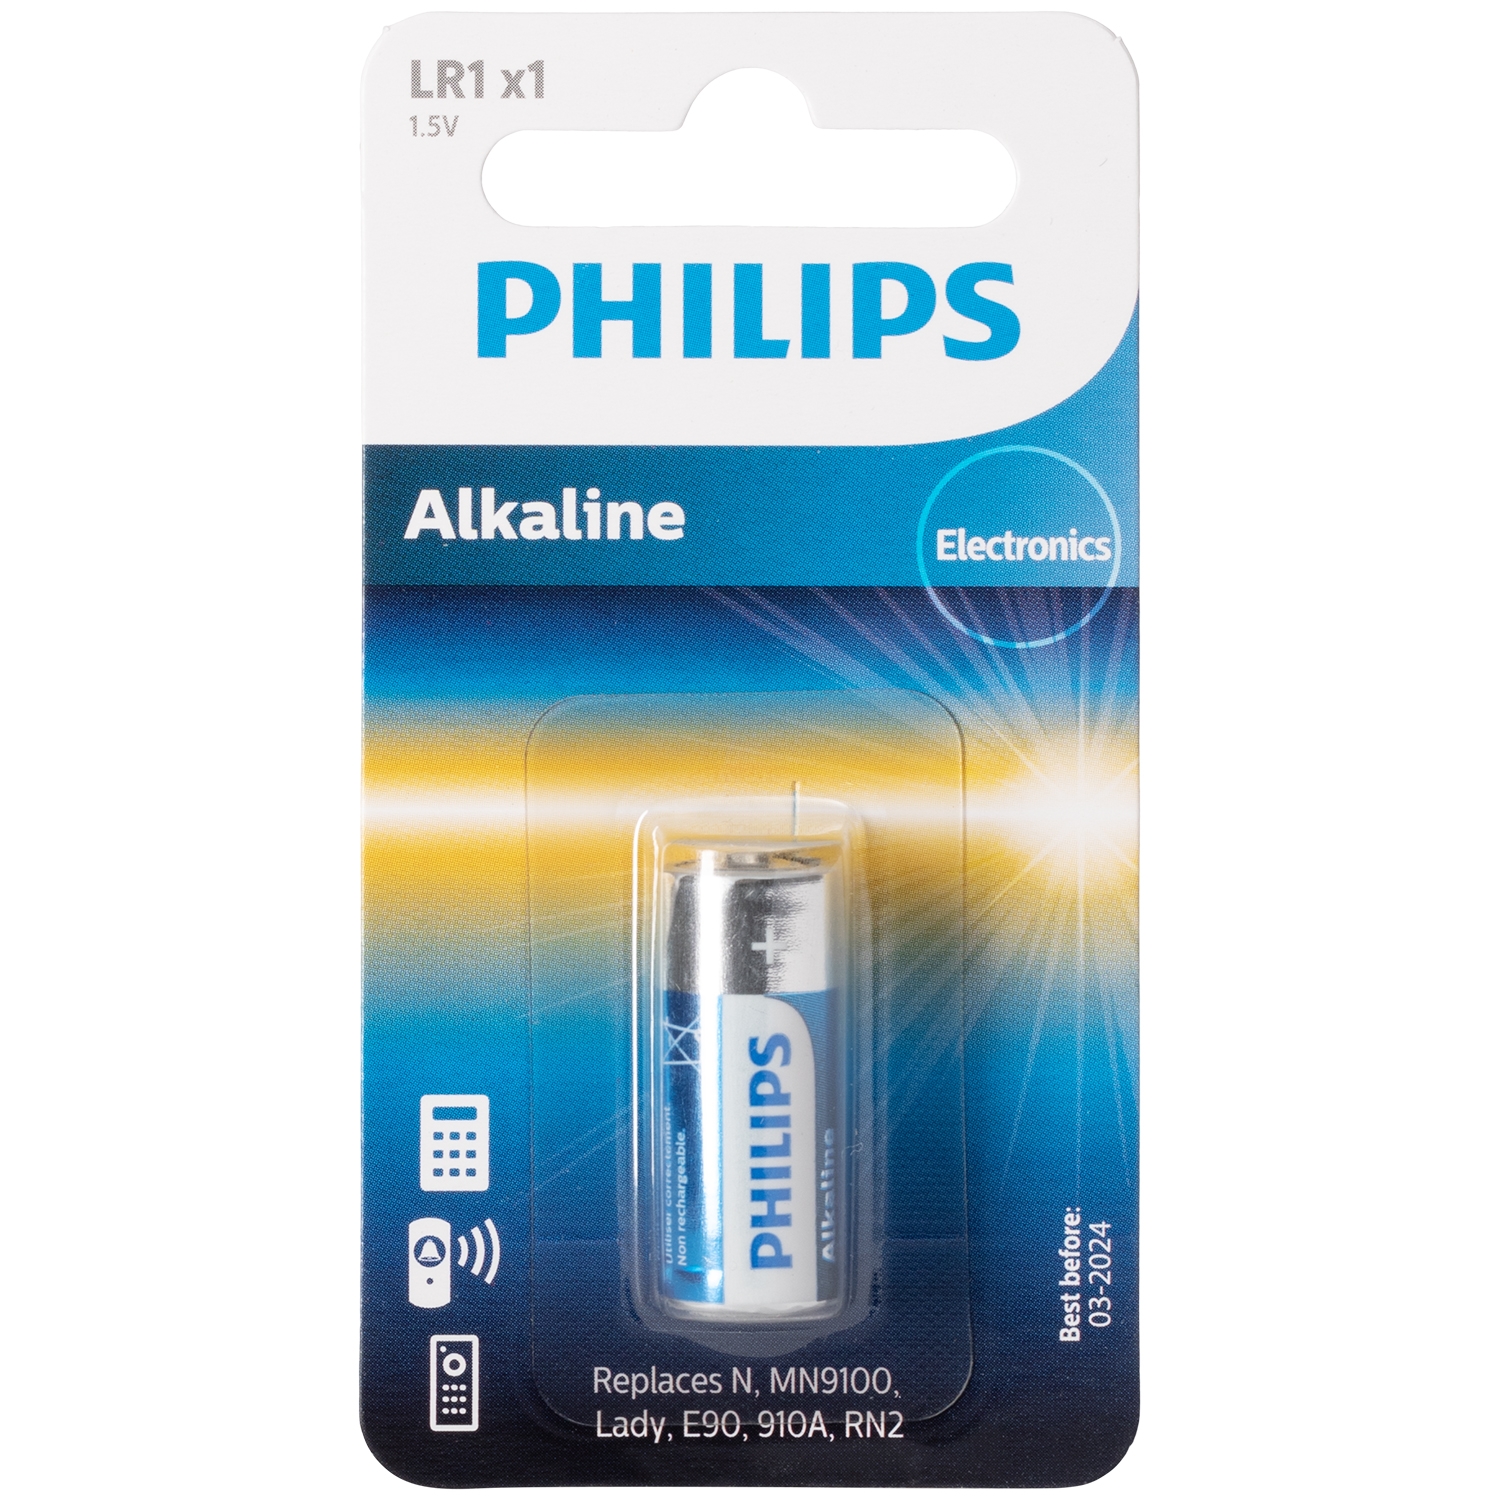 Philips Alkaline LR1 1.5V Batteri thumbnail